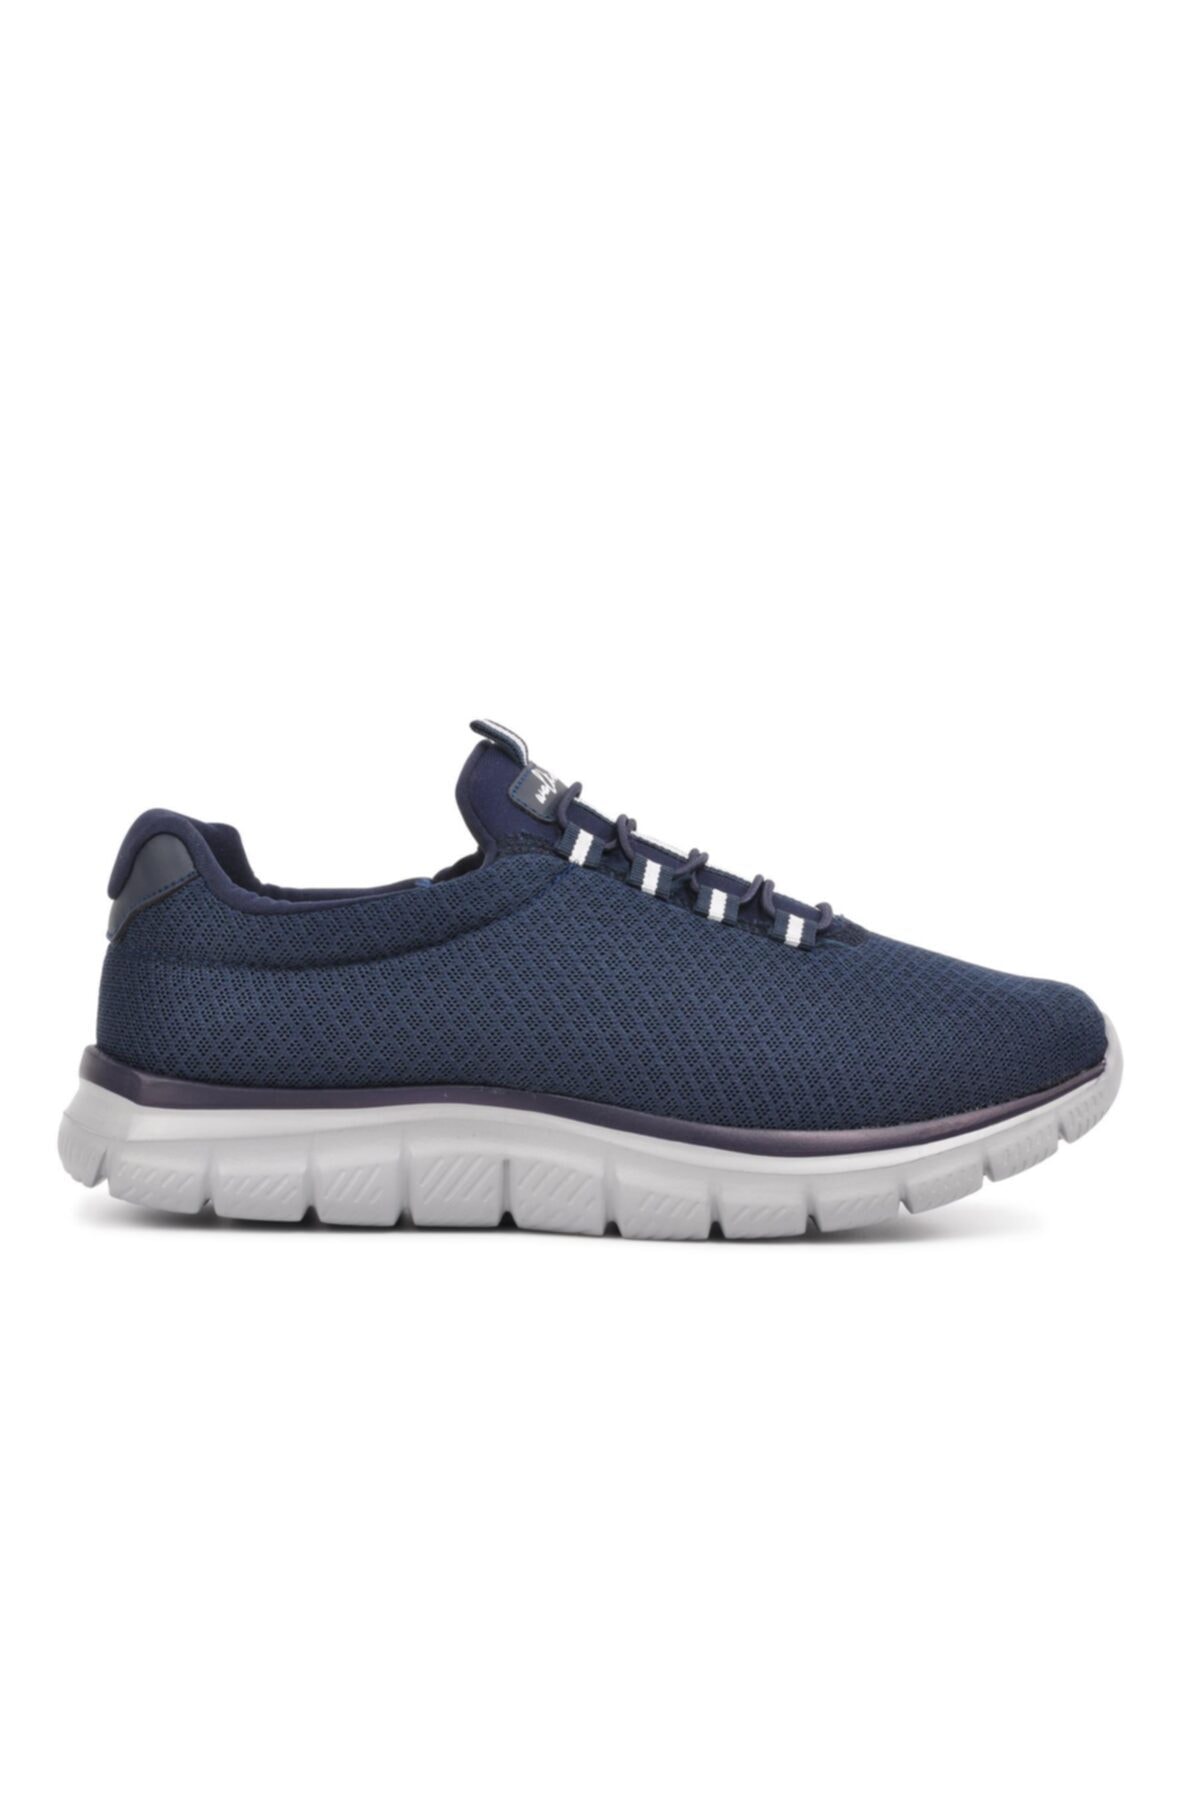 WALKWAY Flexible Lacivert-buz Comfort Bağcıksız Yürüyüş Ayakkabı QE9501